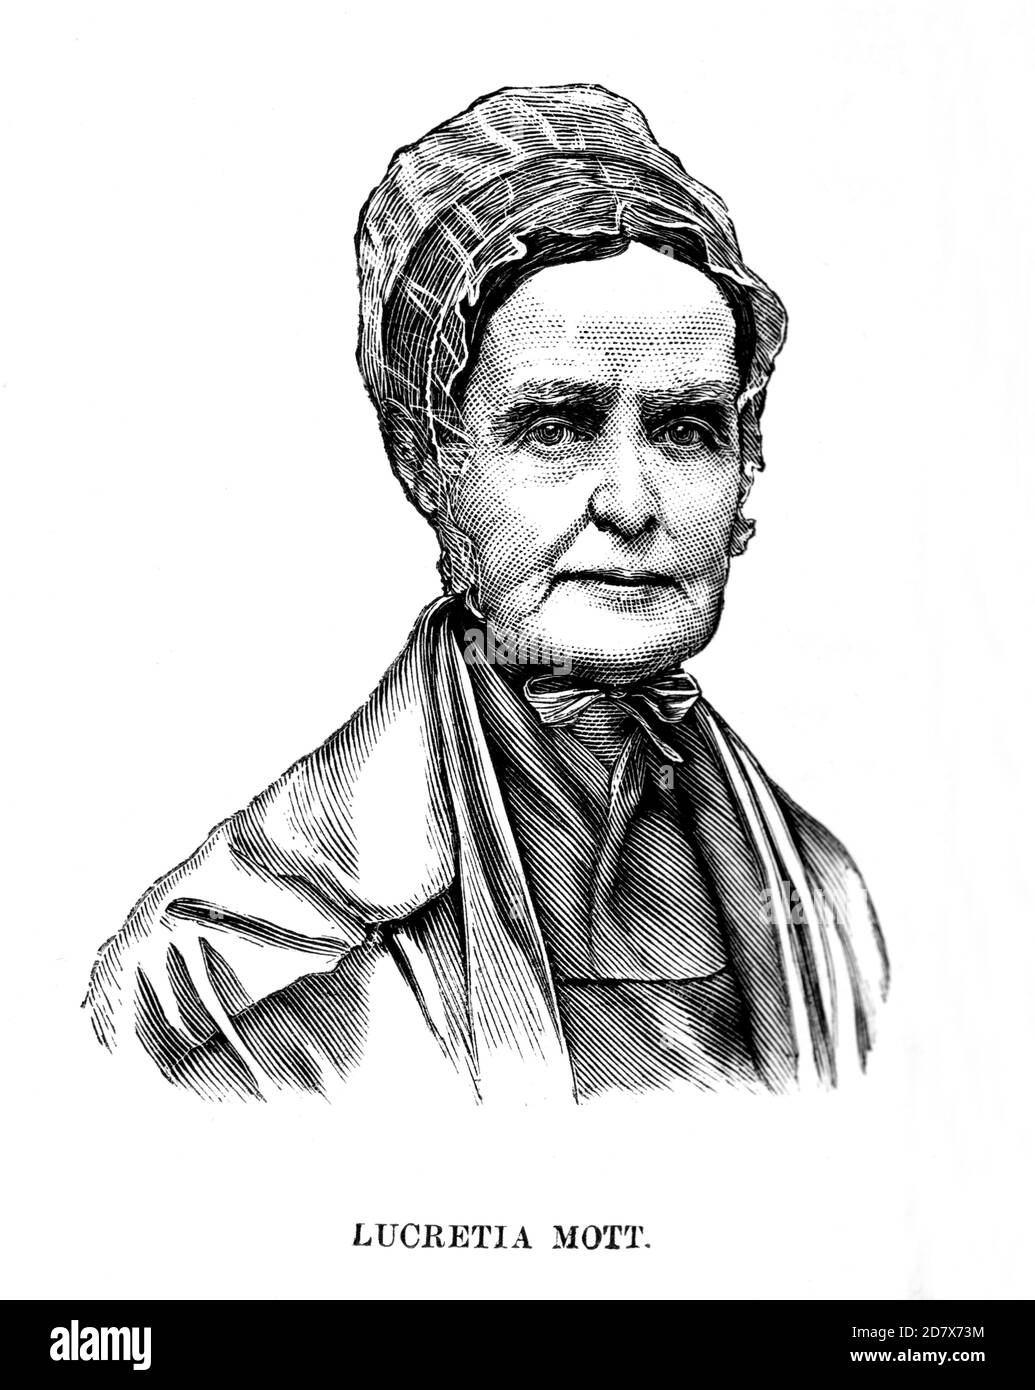 1872 c., USA : The american Quaker , abolitionist , Women's Rights activist and social reformer LUCRETIA MOTT ( born COFFIN , 1793 - 1880 ). Unknown engraver .- USA - ritratto - portrait  - RIFORMISTA - RIFORMISMO SOCIALE - FEMMINISTA - FEMINIST - ABOLIZIONISMO - ABOLIZIONISTA - ANTI-SCHIAVISMO - Antislavery movement - anti schiavismo - ANTI-SCHIAVISTA  - cuffia - hat - cappello - older woman - donna anziana vecchia ---  Archivio GBB Stock Photo